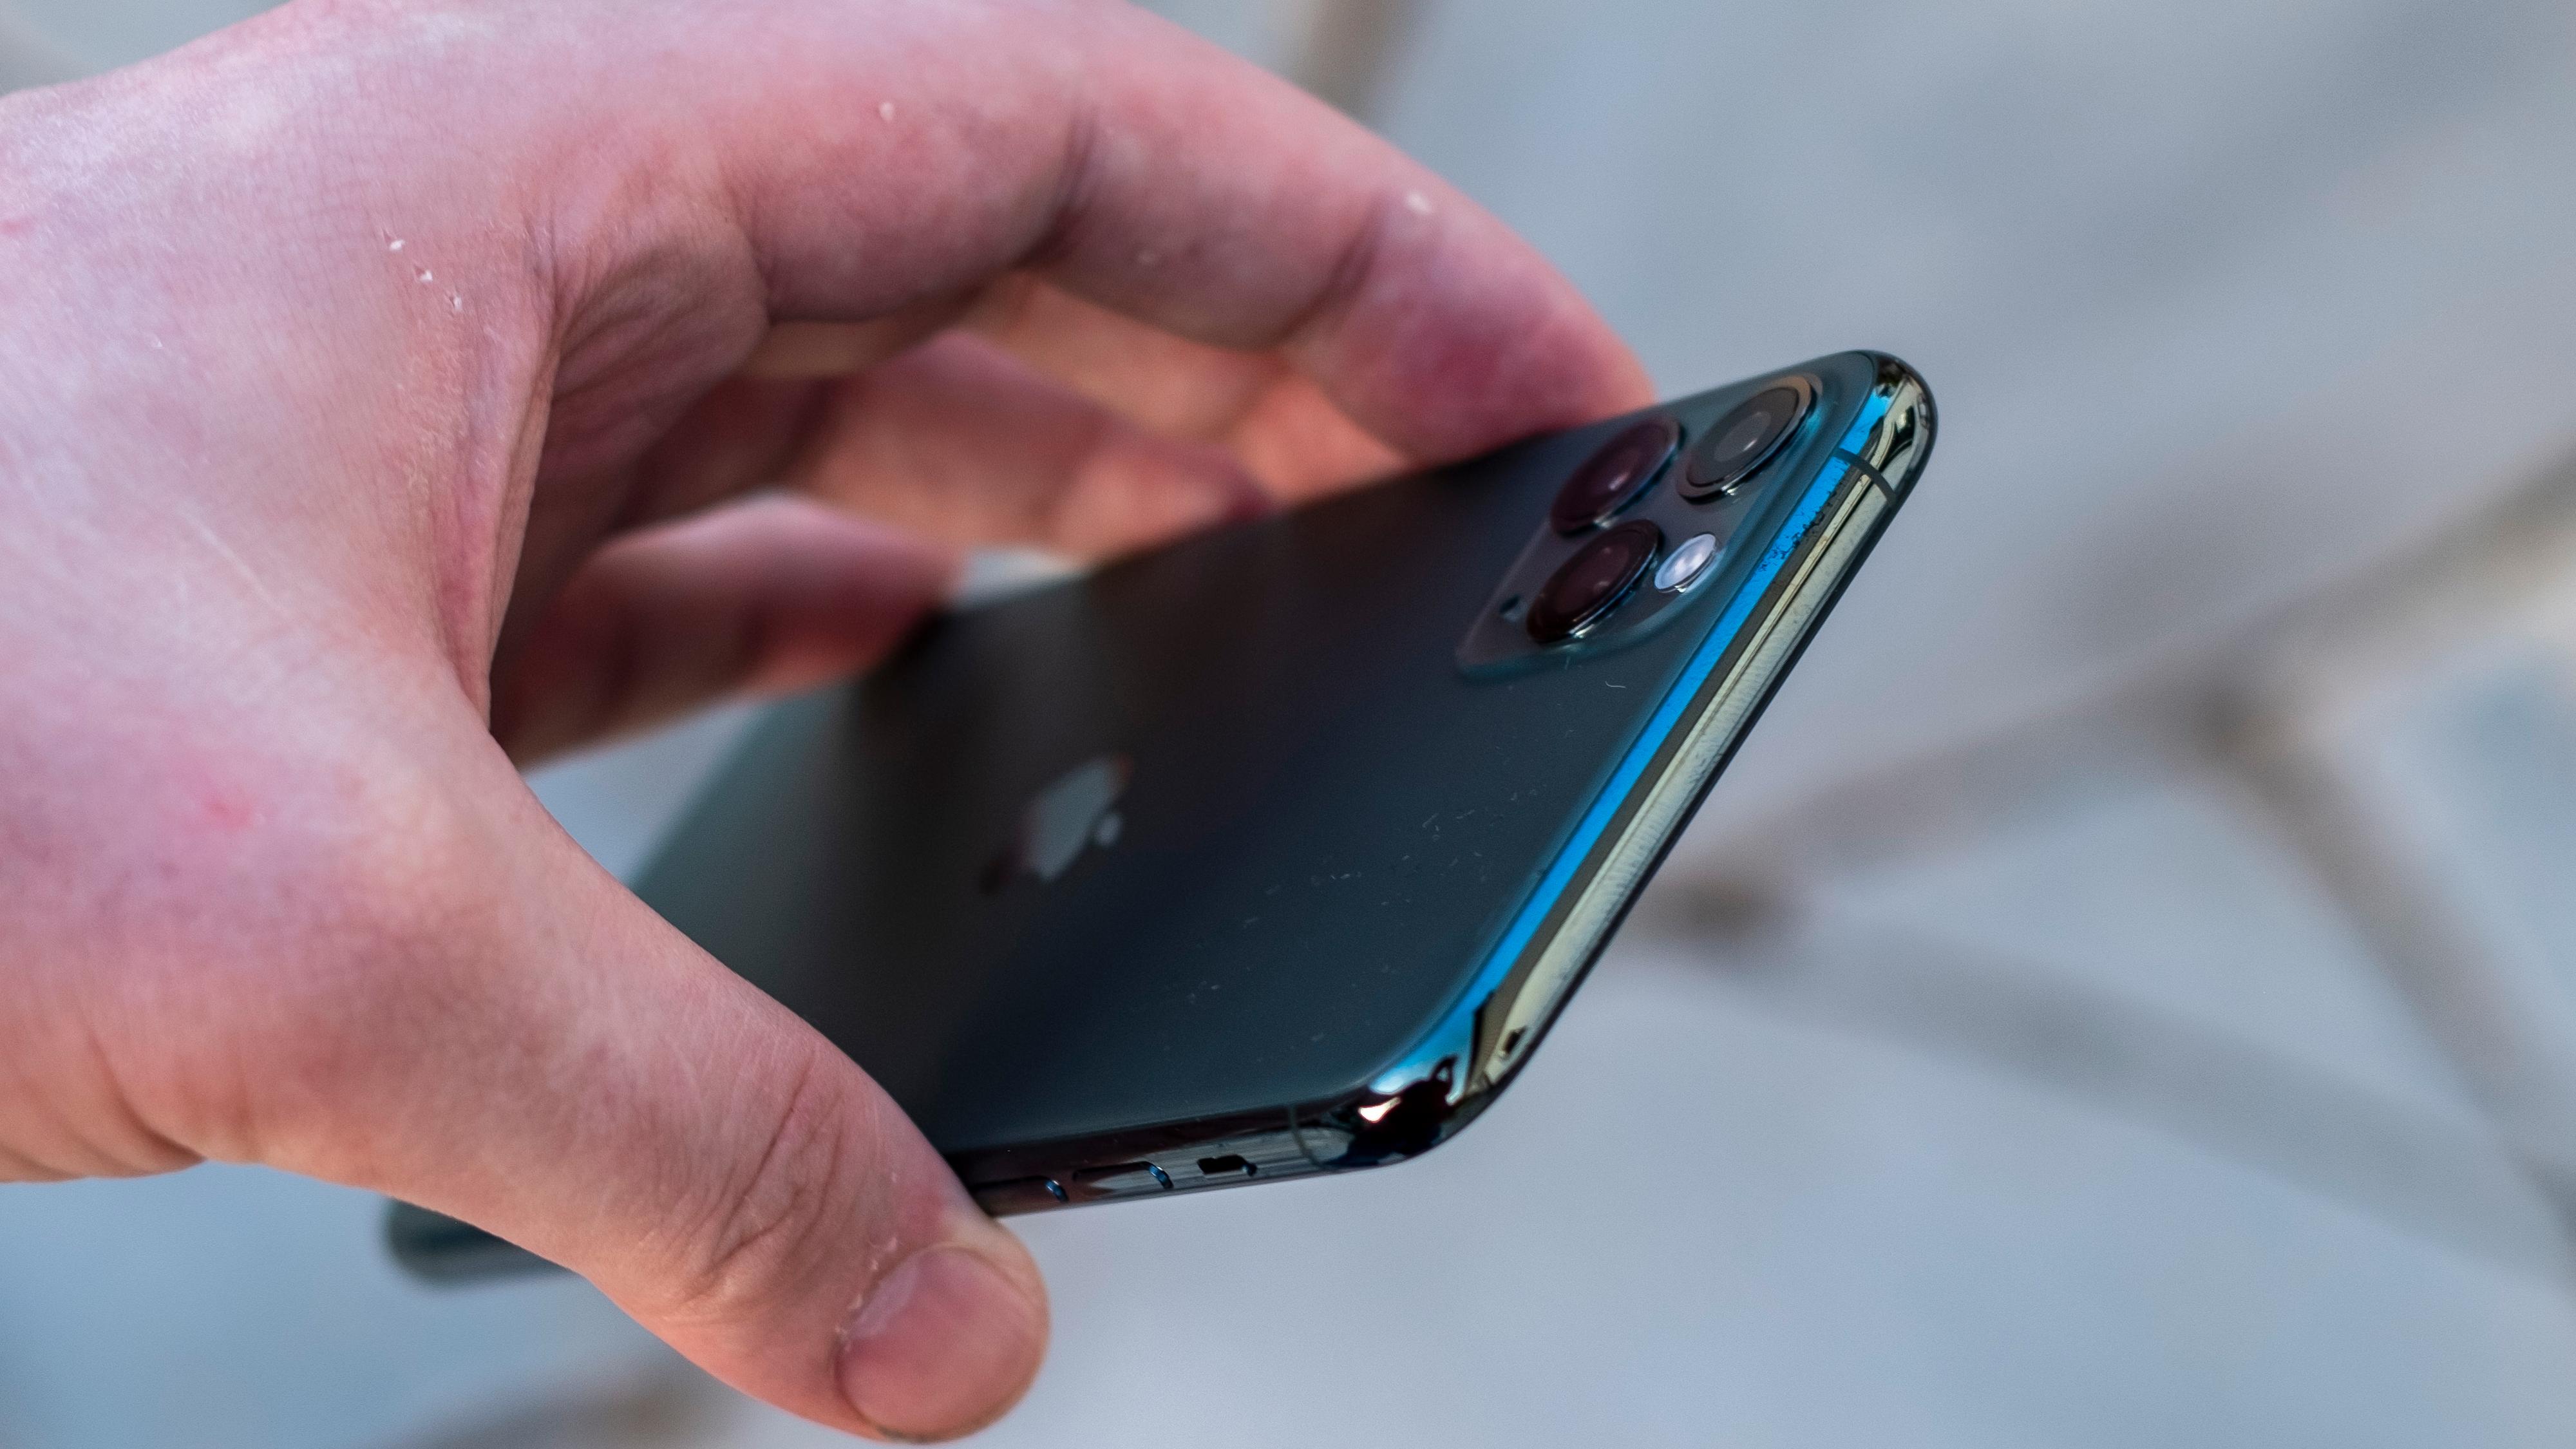 Apple har gjort de nye iPhonene litt tykkere, og samtidig gitt dem større batteri. Se så tjukk den har blitt! Neida, den er bare 0,4 millimeter tykkere, så den passer i lomma akkurat som før.